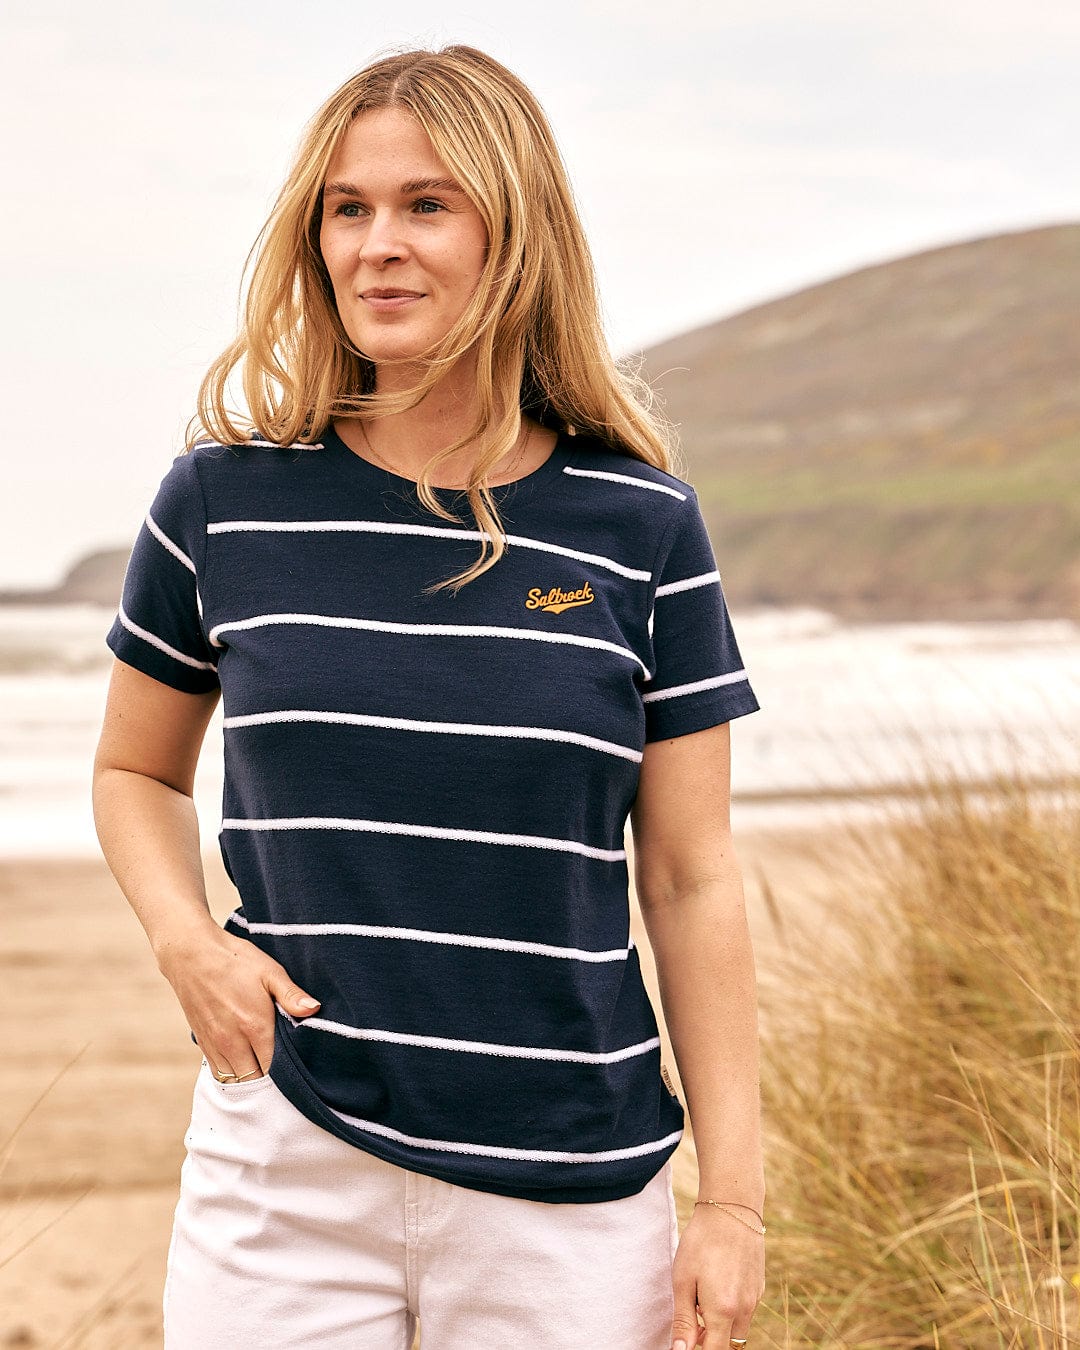 A woman wearing a Saltrock Hartland - Womens Striped Short Sleeve T-Shirt - Blue standing on the beach.